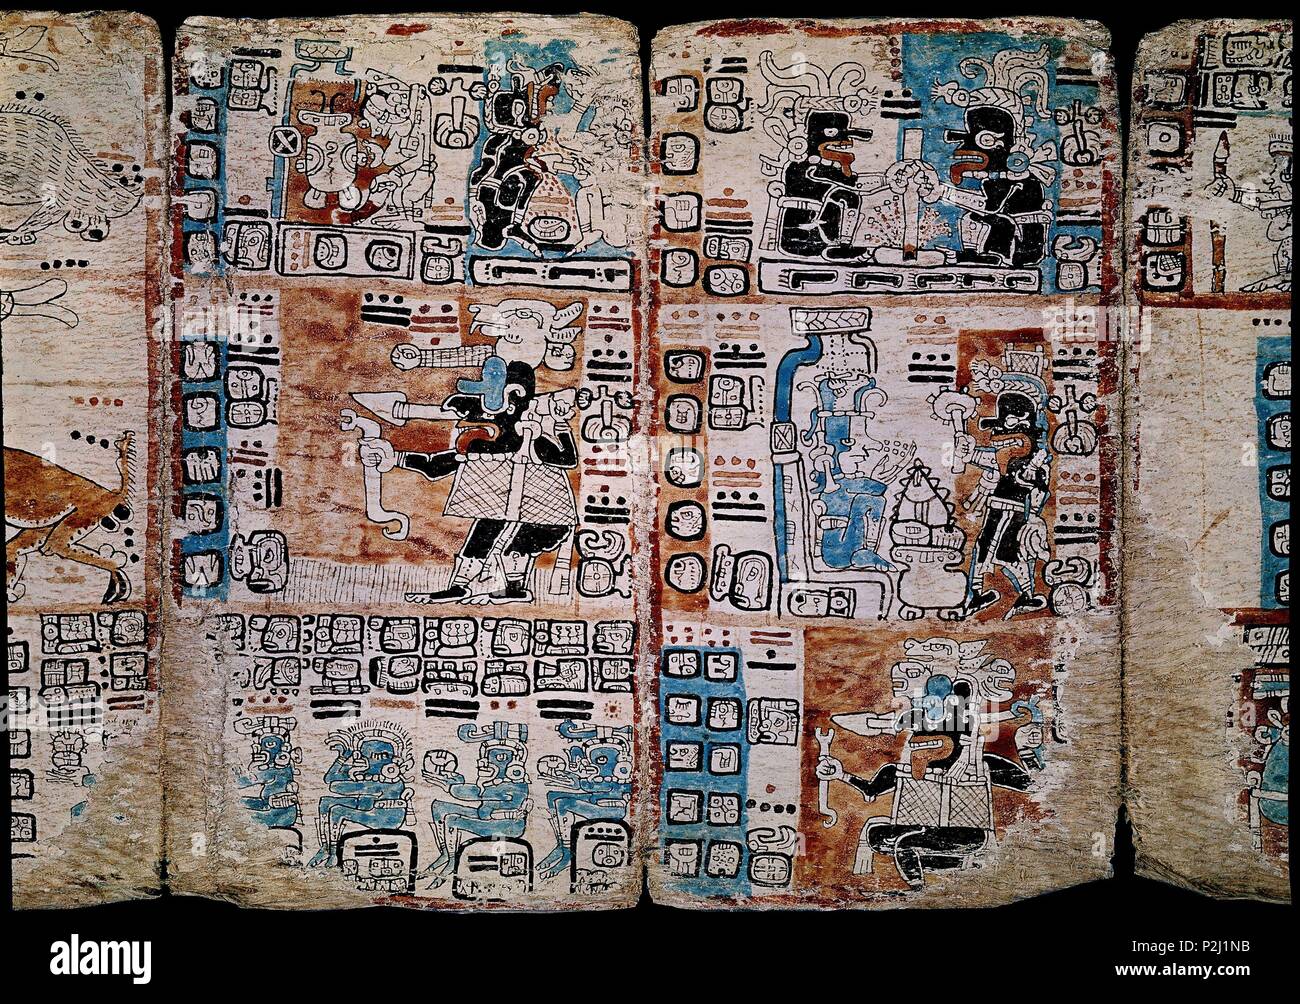 Page de la Codex Tro-Cortesianus ou codex de Madrid. Codex maya. Les dieux et les hommes. 13e-15e siècles. Madrid, Musée de l'Amérique. Lieu : MUSÉE DE L'AMÉRIQUE - COLECCION, MADRID, ESPAGNE. Banque D'Images